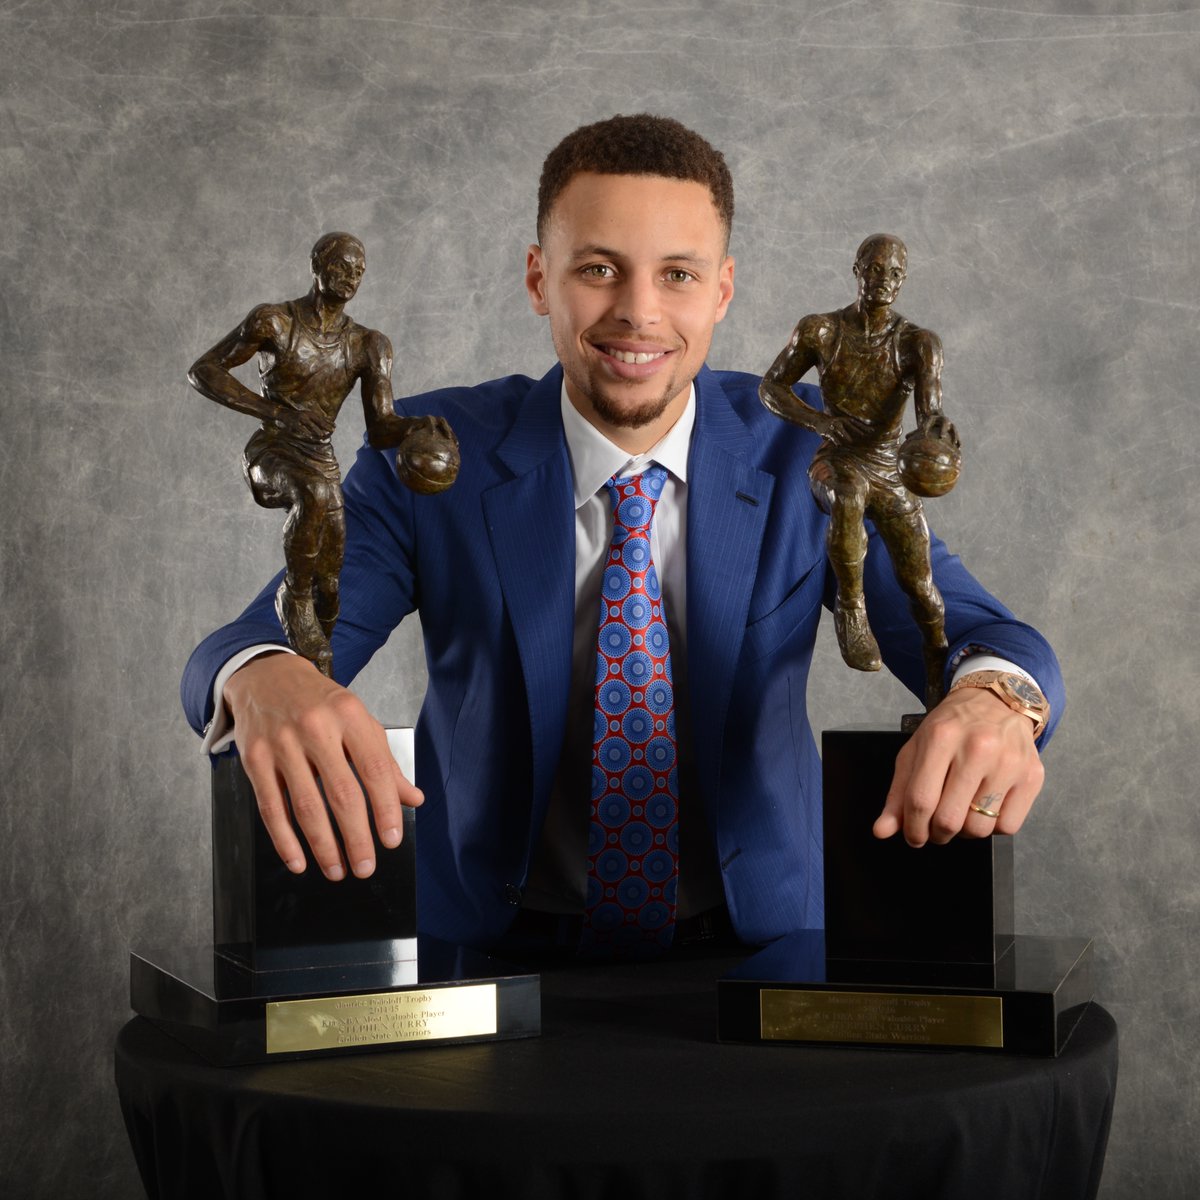 Stephen Curry'nin peş peşe ikinci MVP ödülünü kazanmasından...

Ve tarihin oy birliğiyle seçilen ilk MVP'si olmasının üzerinden tam 8 yıl geçti. 🔙